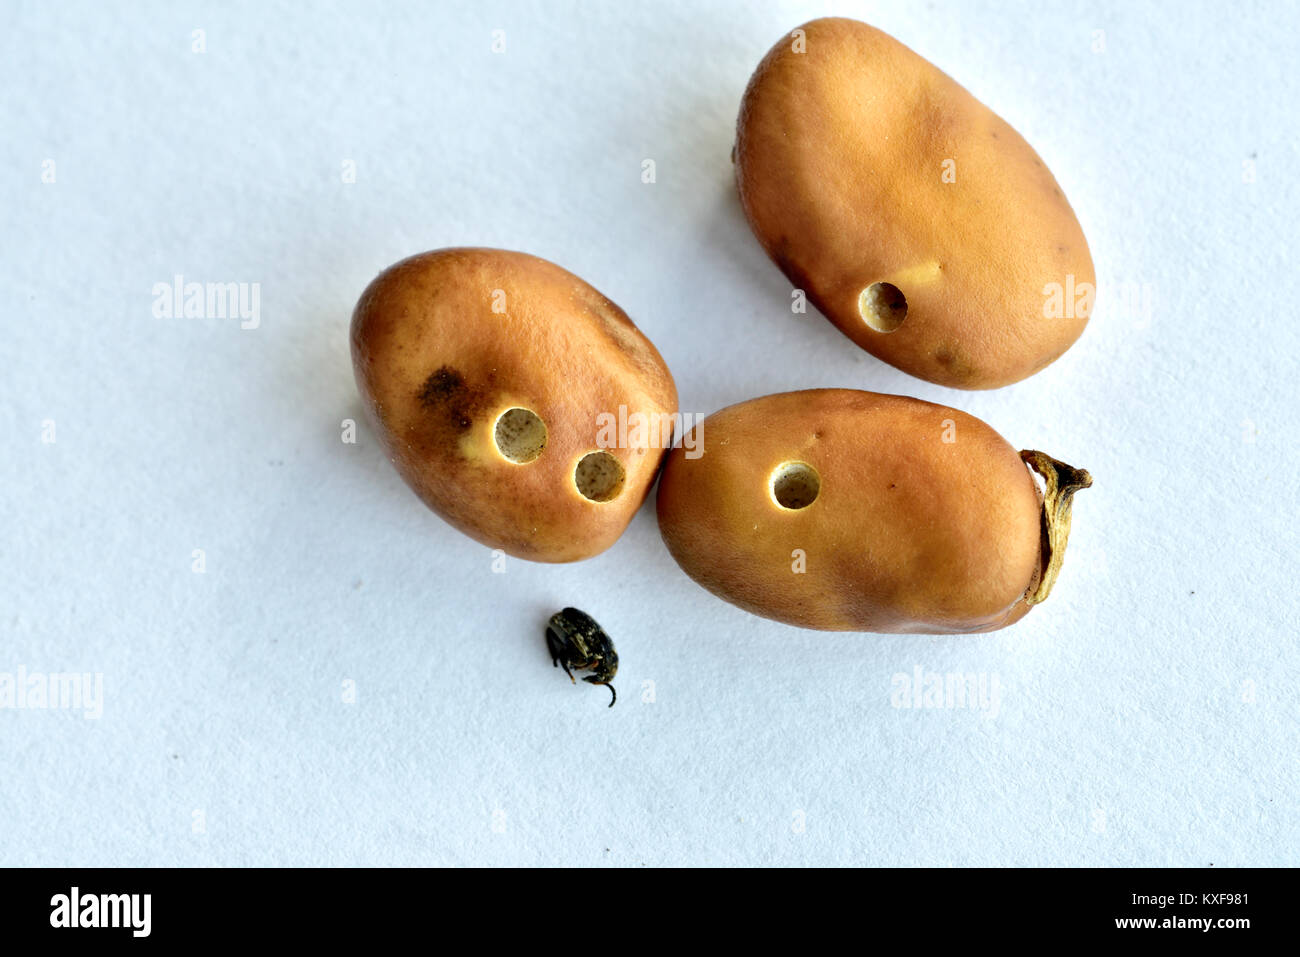 Haricots secs ou des fèves, un important aliment de base dans certains pays, montrant des trous produits par le bean seed beetle avec un scarabée mort Banque D'Images